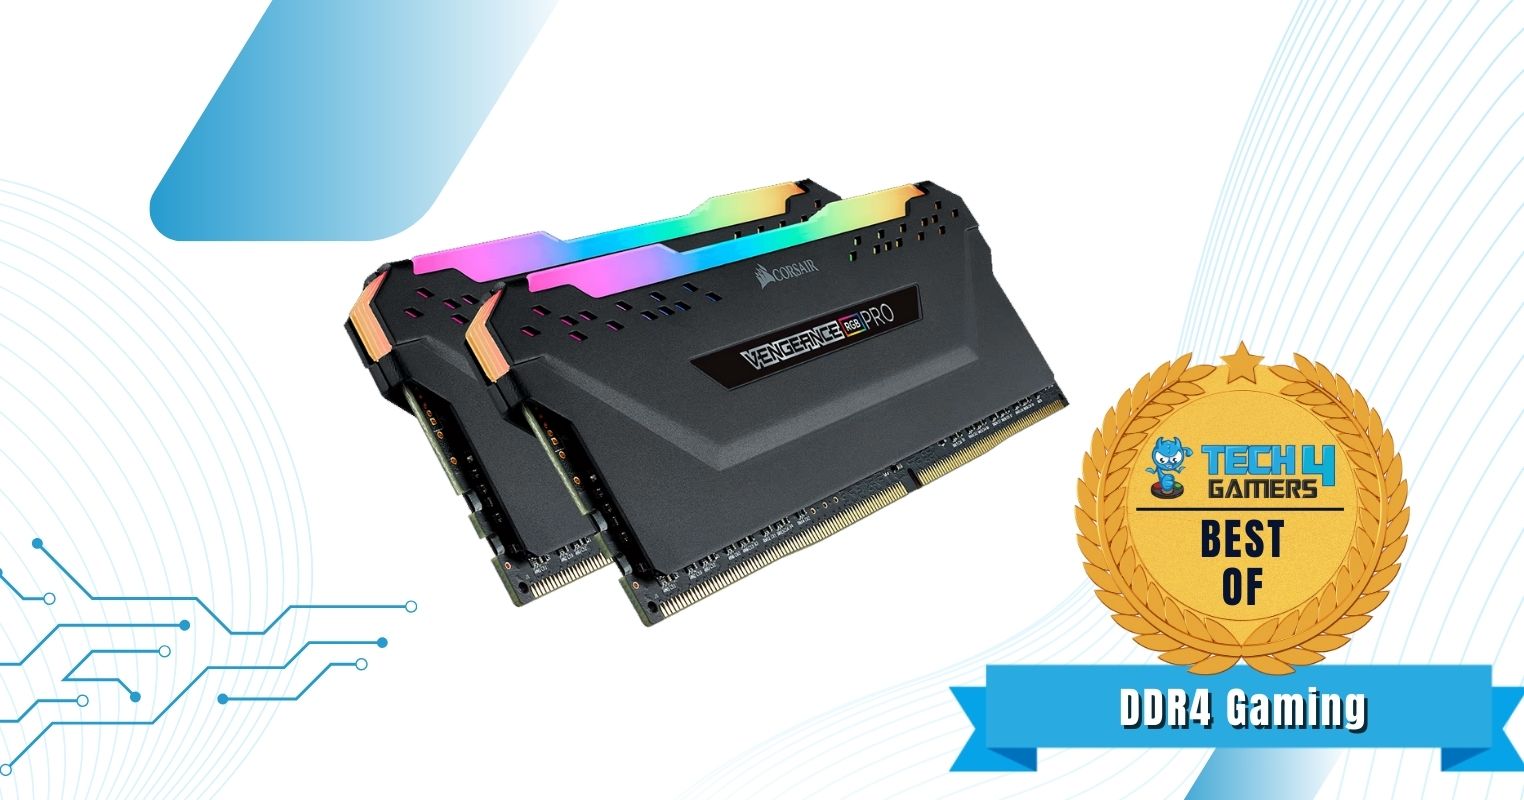 Best DDR4 Gaming RAM For i9-12900K - Corsair Vengeance RGB Pro DDR4